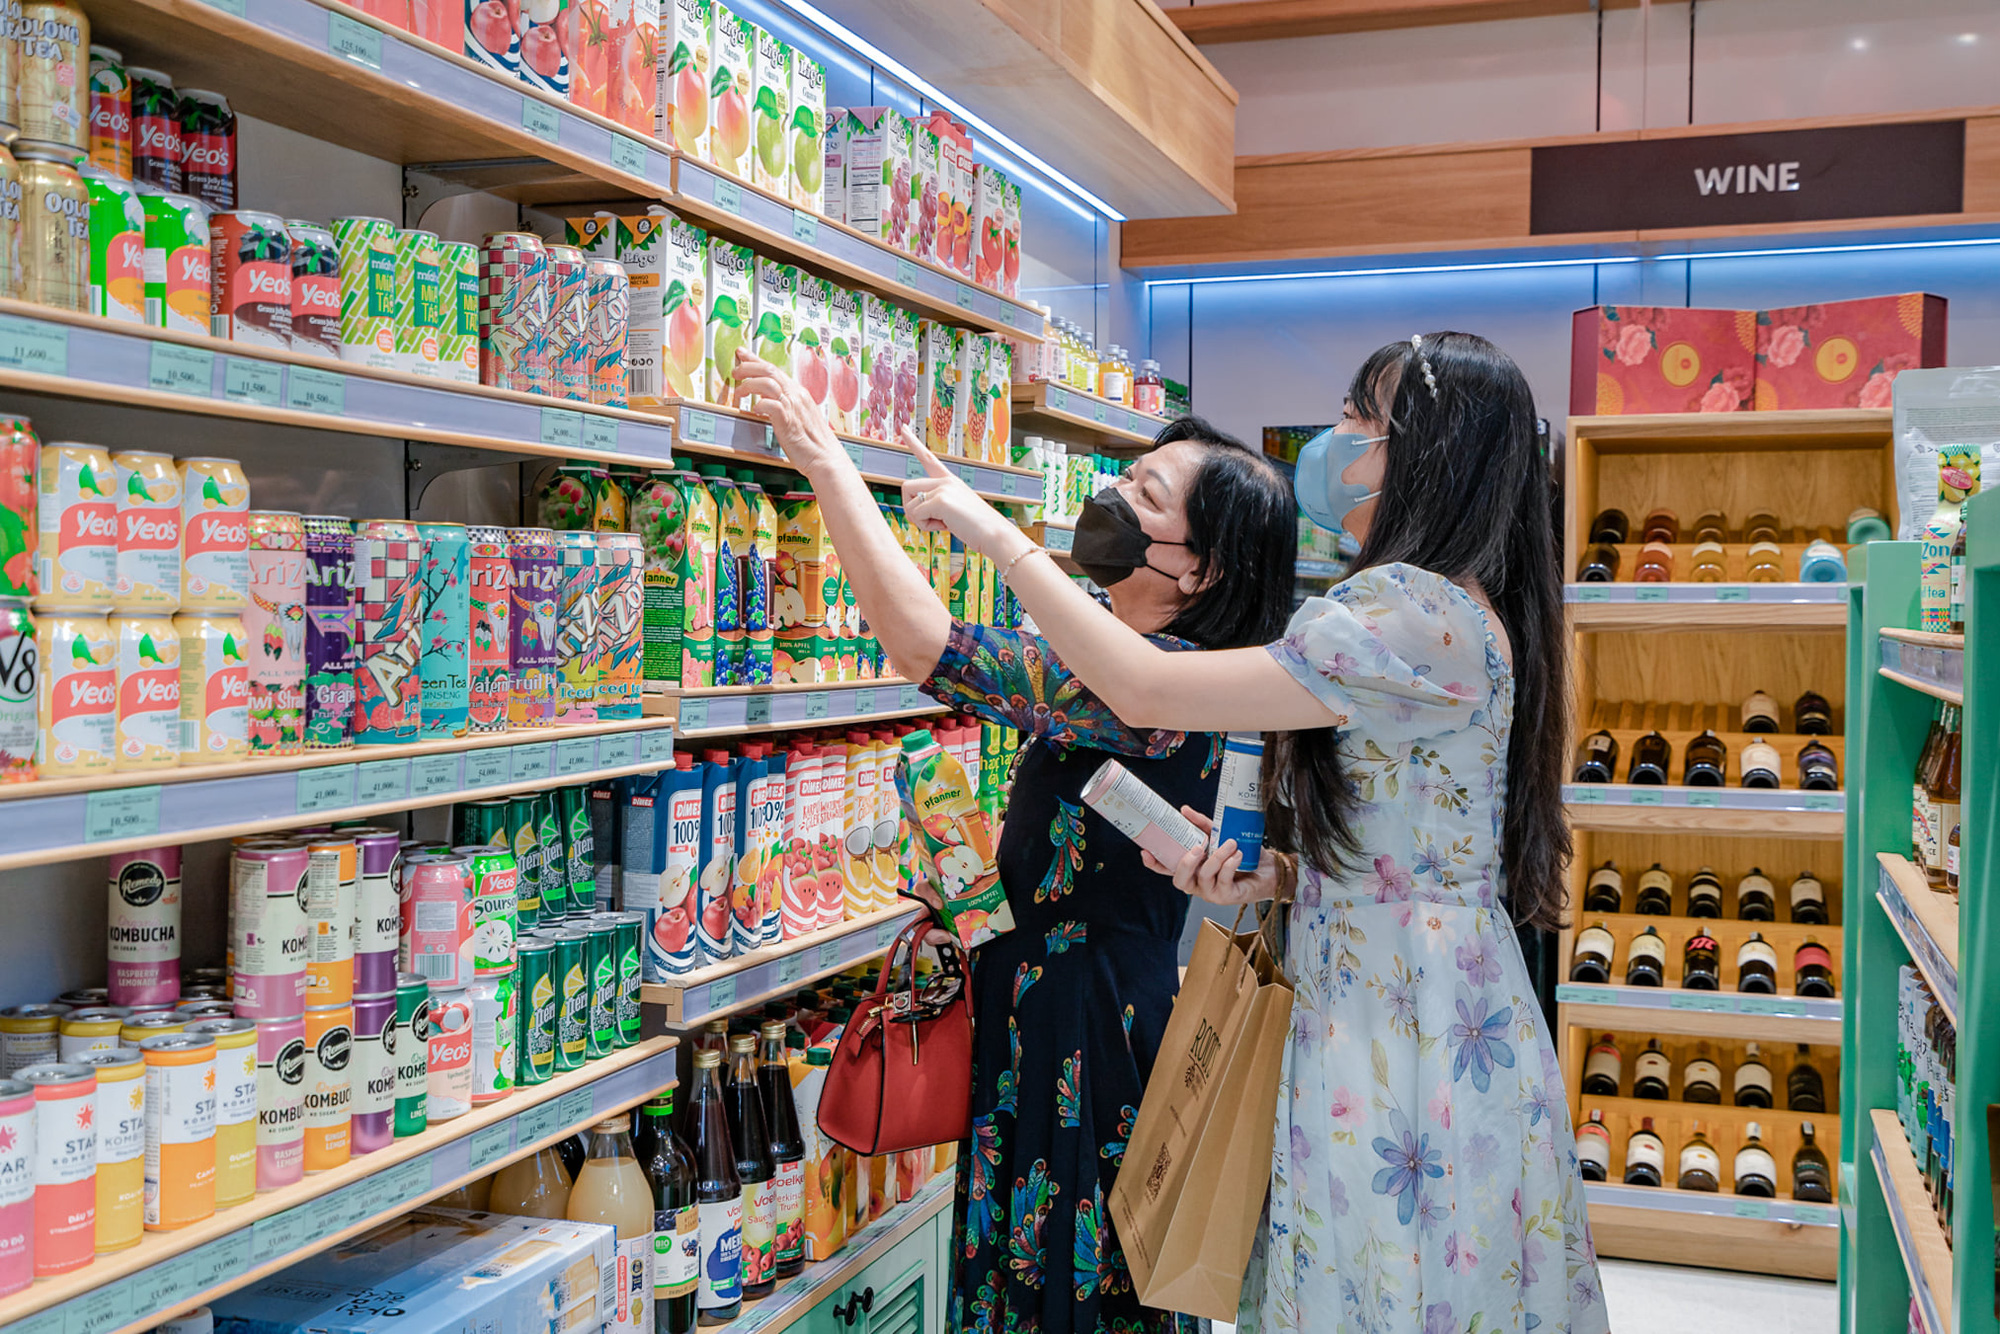 Ra mắt chuỗi siêu thị Roots, thêm một lựa chọn thực phẩm sạch cho người Sài Gòn - Ảnh 1.